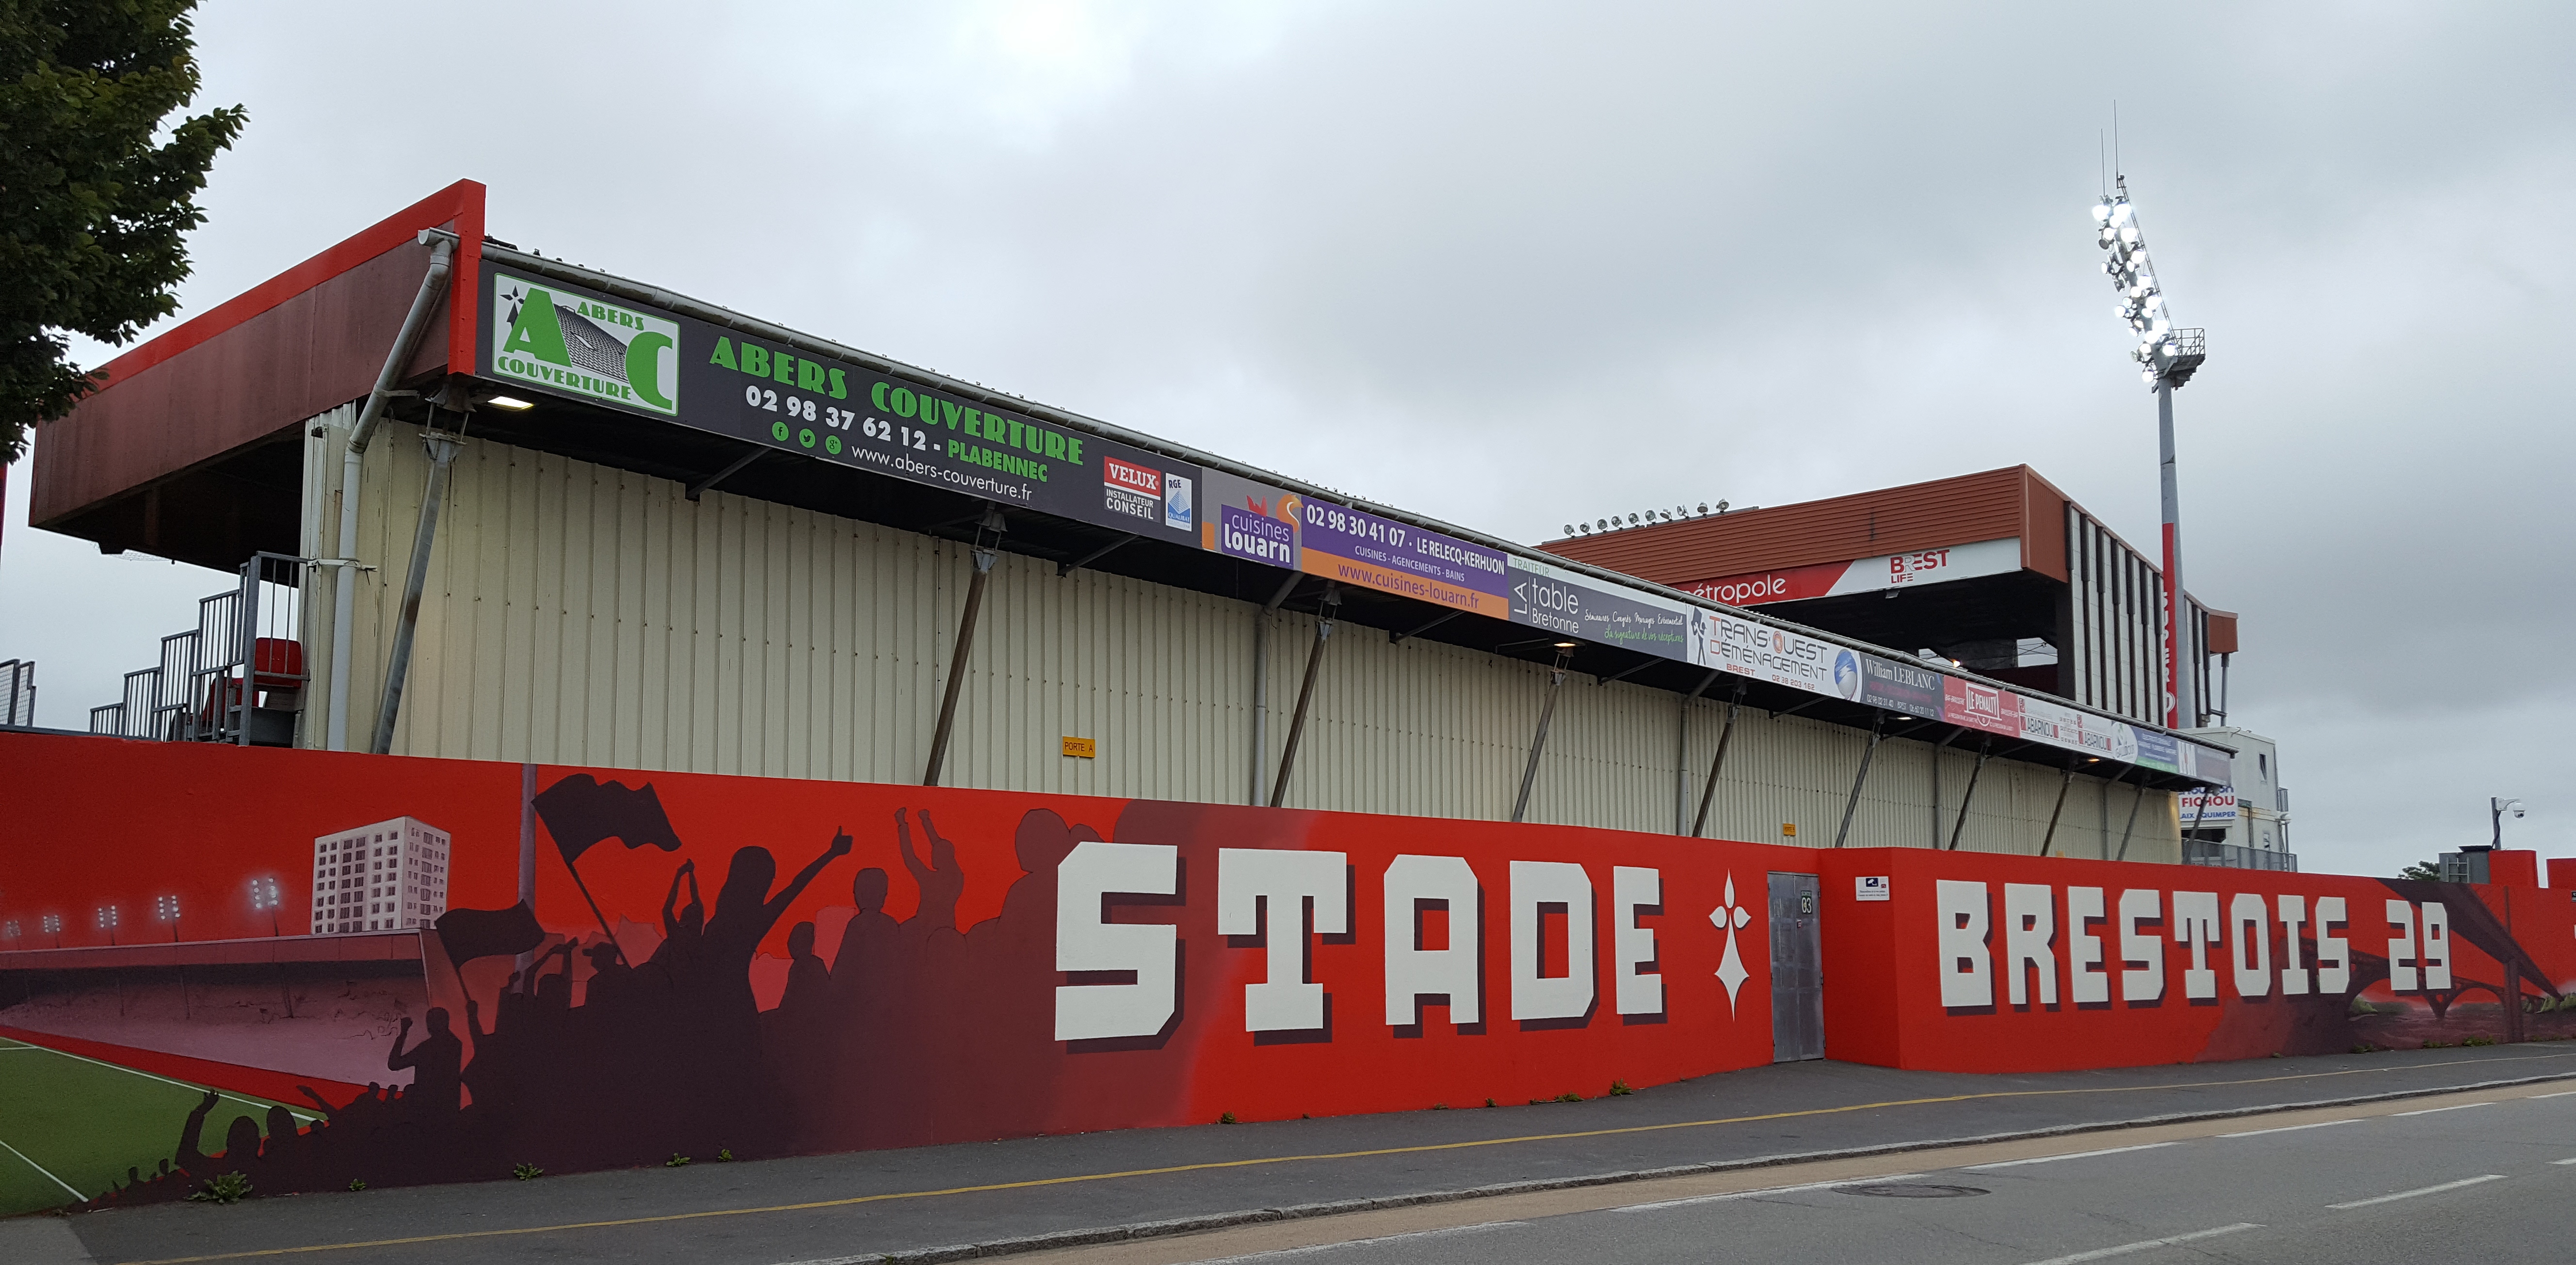 Stade Brestois 29 | Jimmy Sirrel's Lovechild